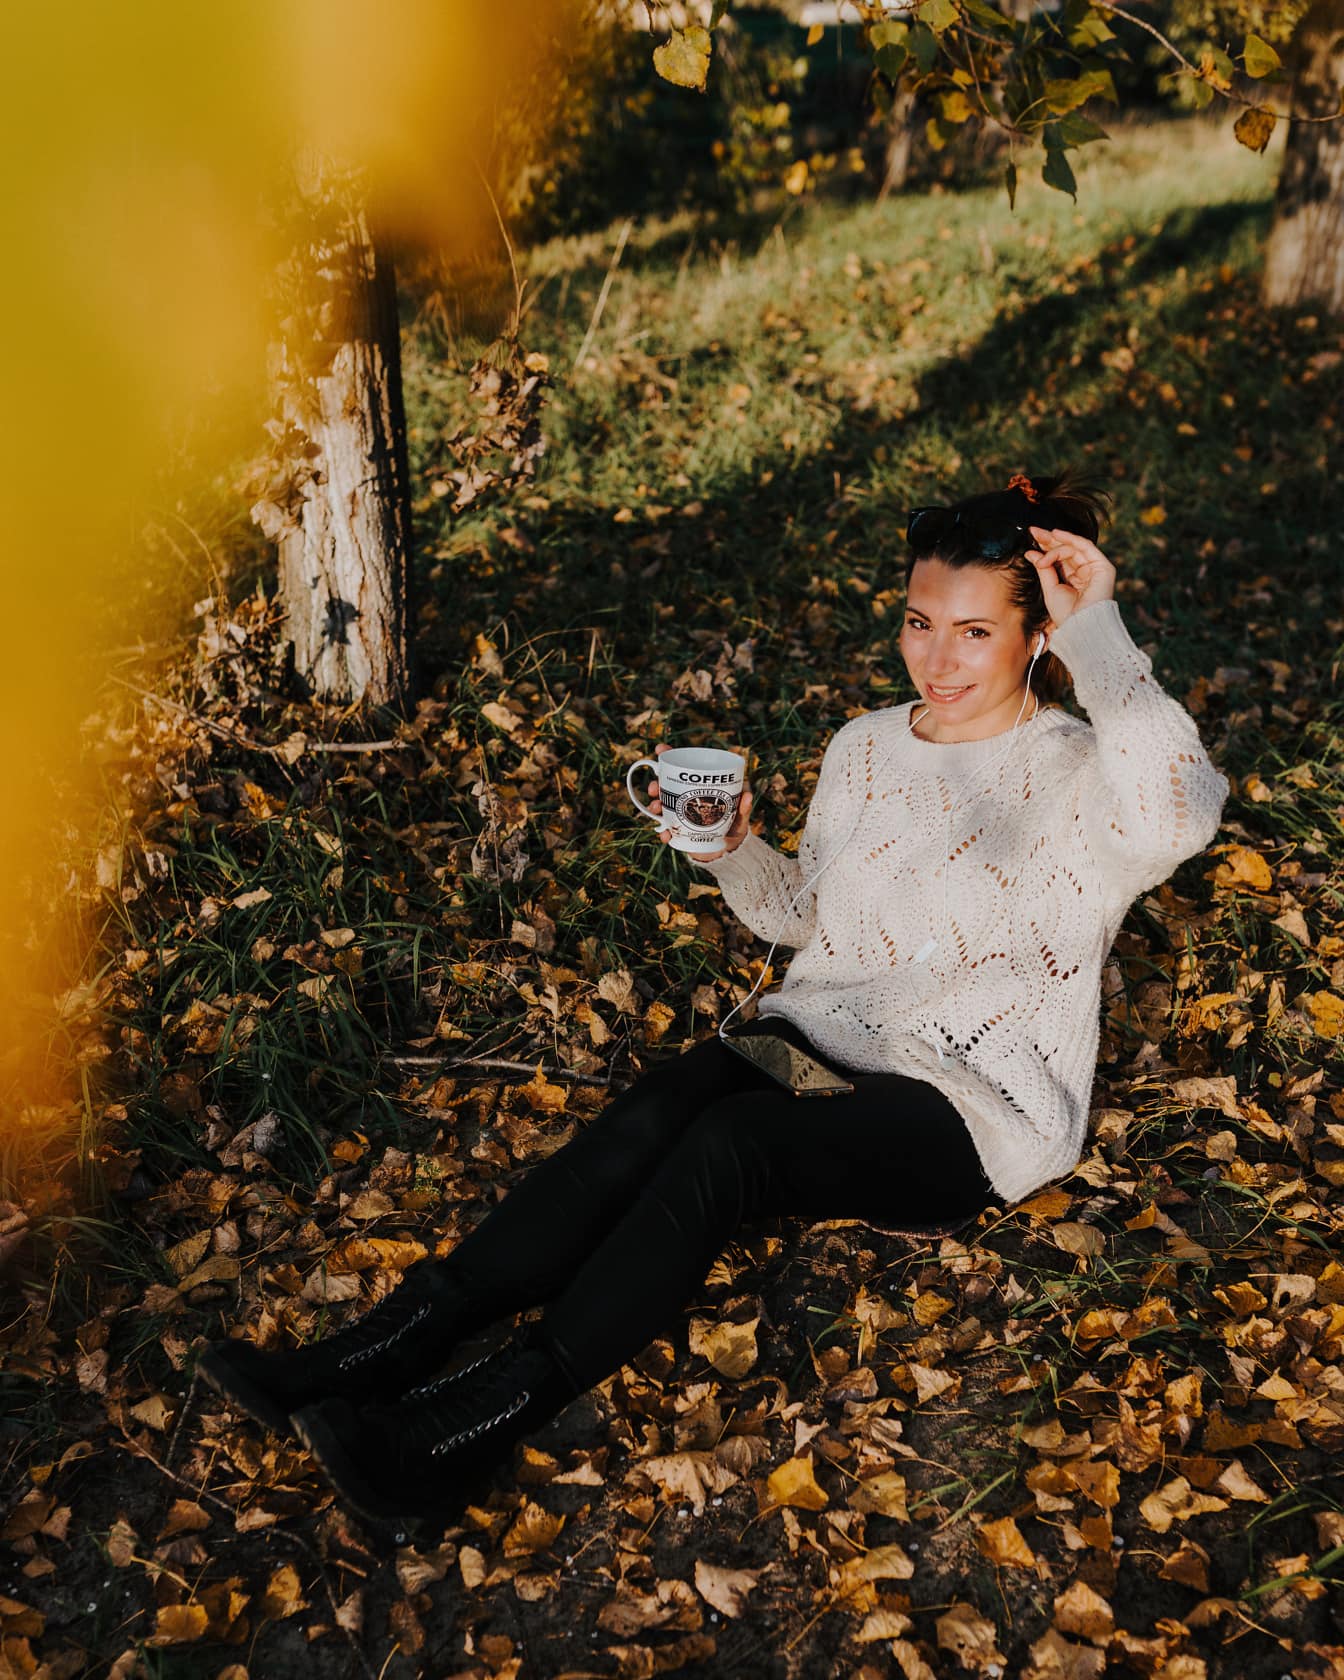 Doamna relaxându-se cu cana de cafea așezată pe frunze în sezonul de toamnă